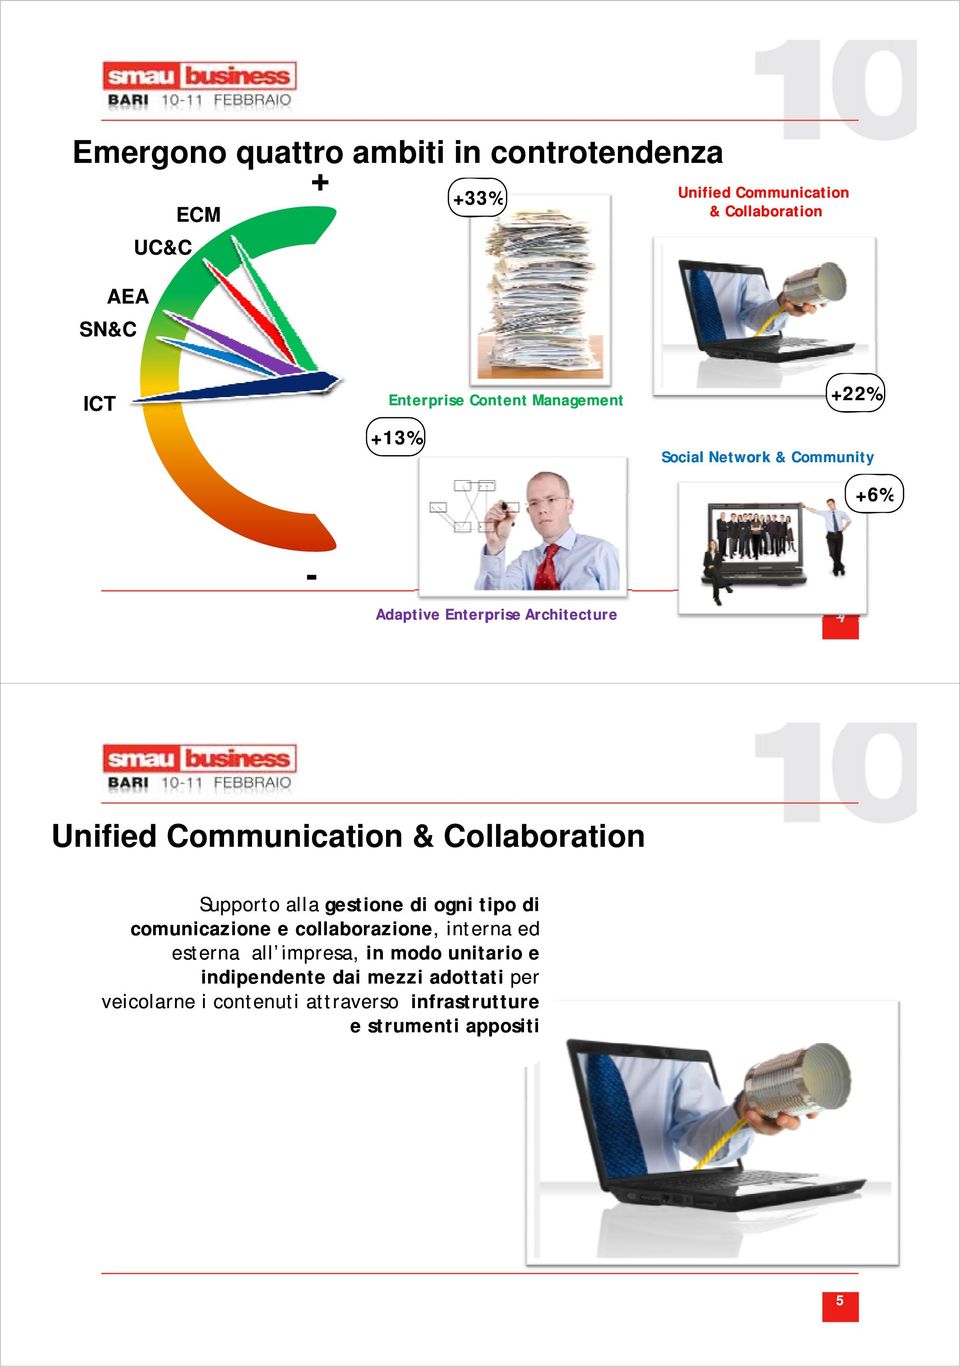 Collaboration Supporto alla gestione di ogni tipo di comunicazione e collaborazione,, interna ed esterna all impresa, in